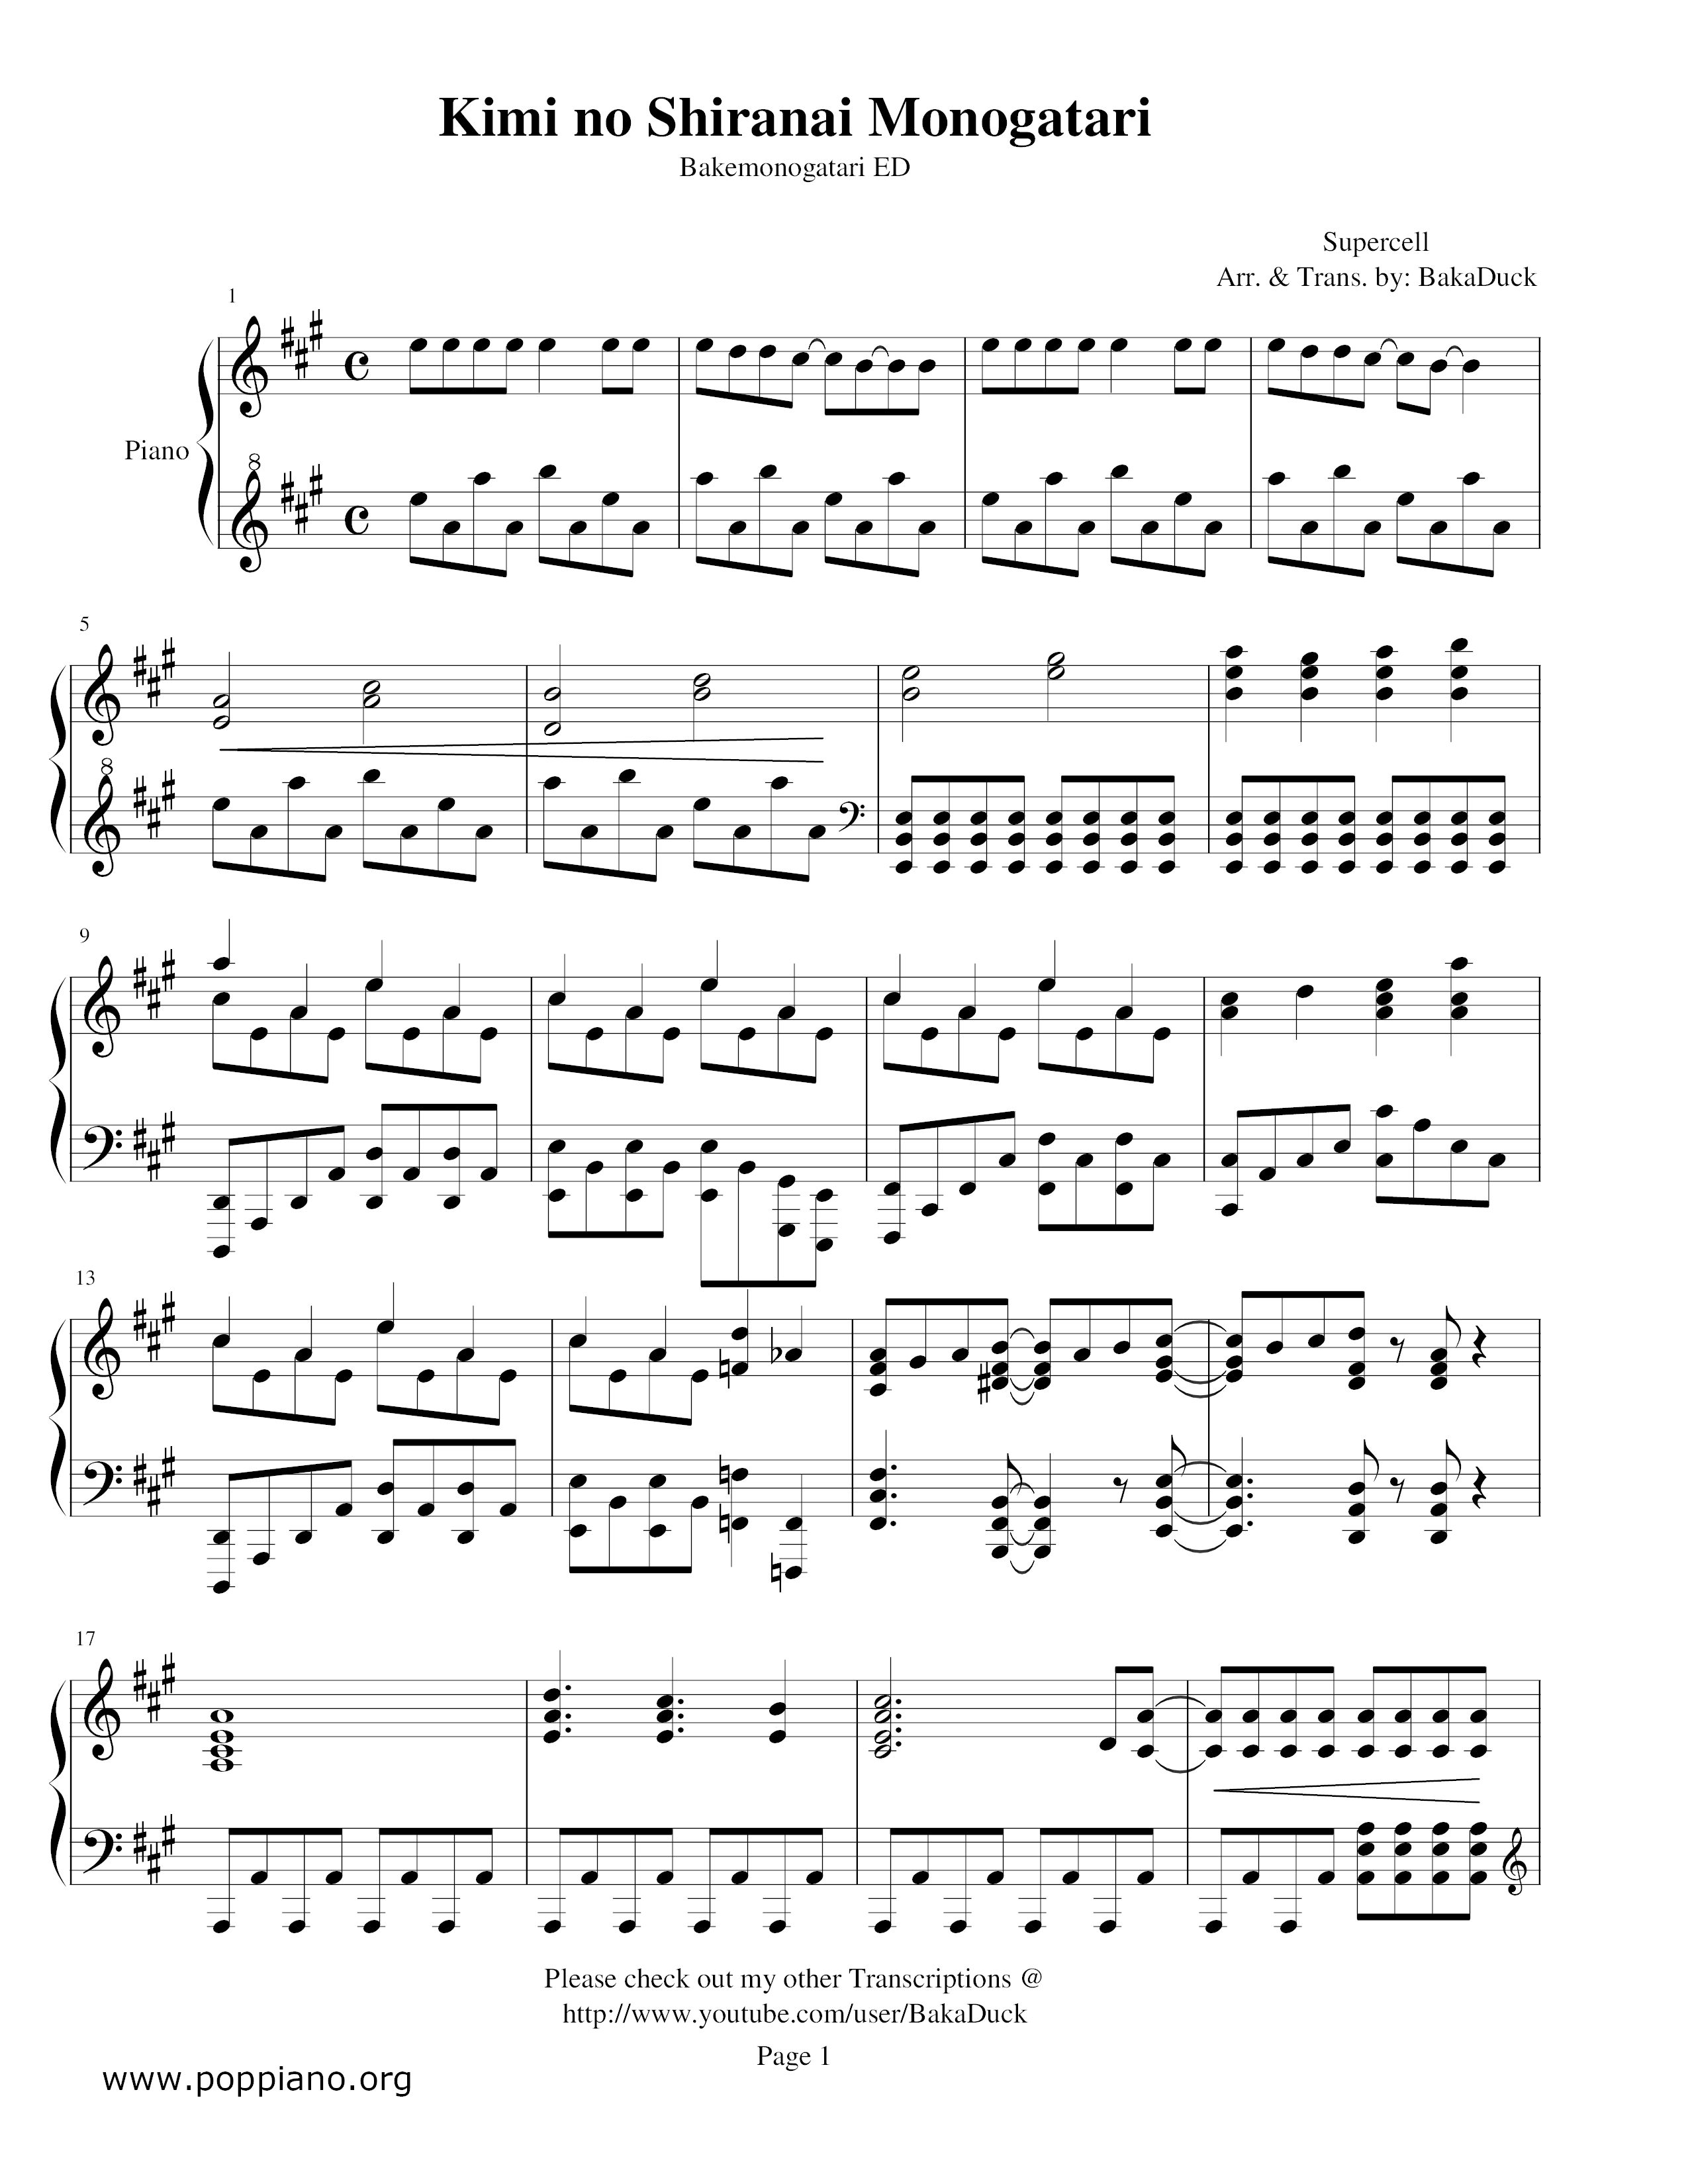 Kimi No Shiranai Monogatariピアノ譜